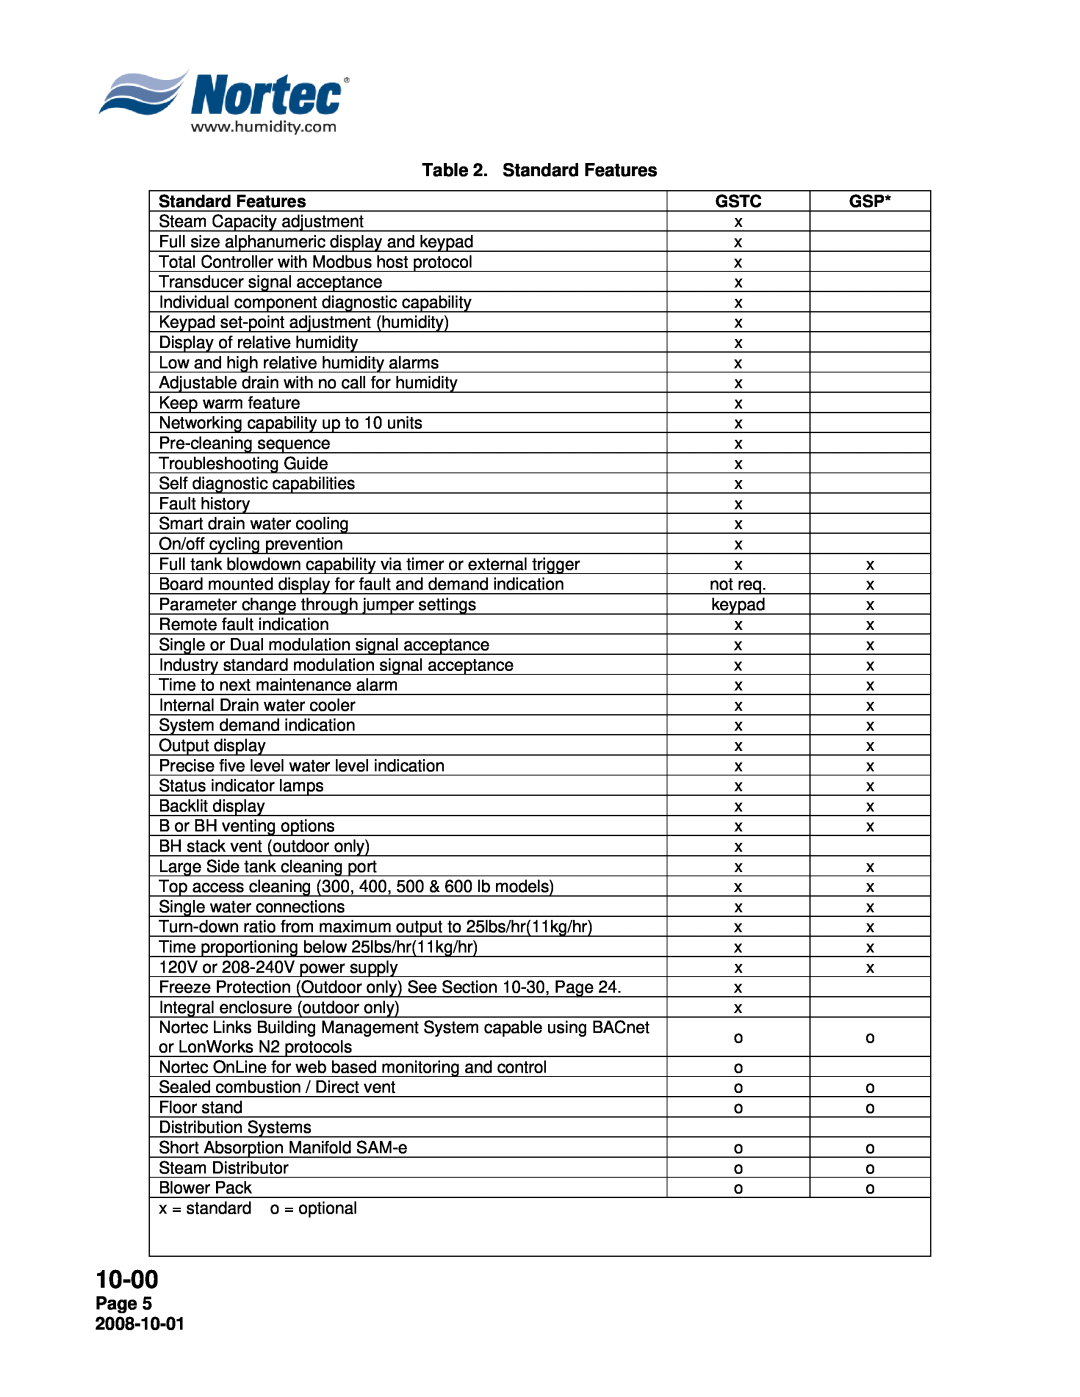 Nortec Industries GSTC Outdoor, GSTC Indoor, GSP Indoor manual 10-00, Standard Features, Gstc, Page 